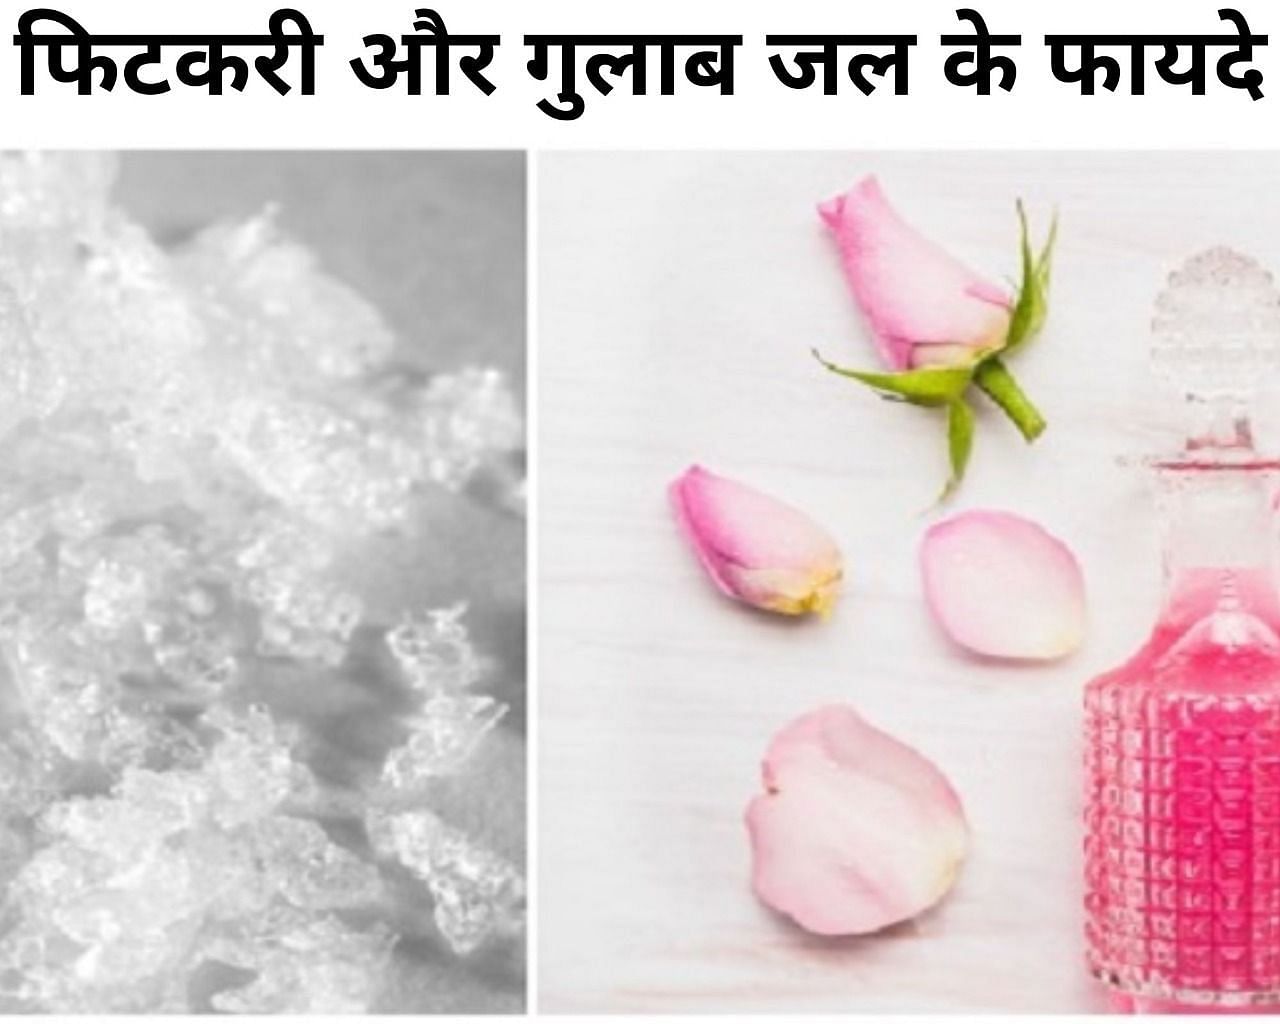 फिटकरी और गुलाब जल के फायदे (फोटो - sportskeeda hindi)